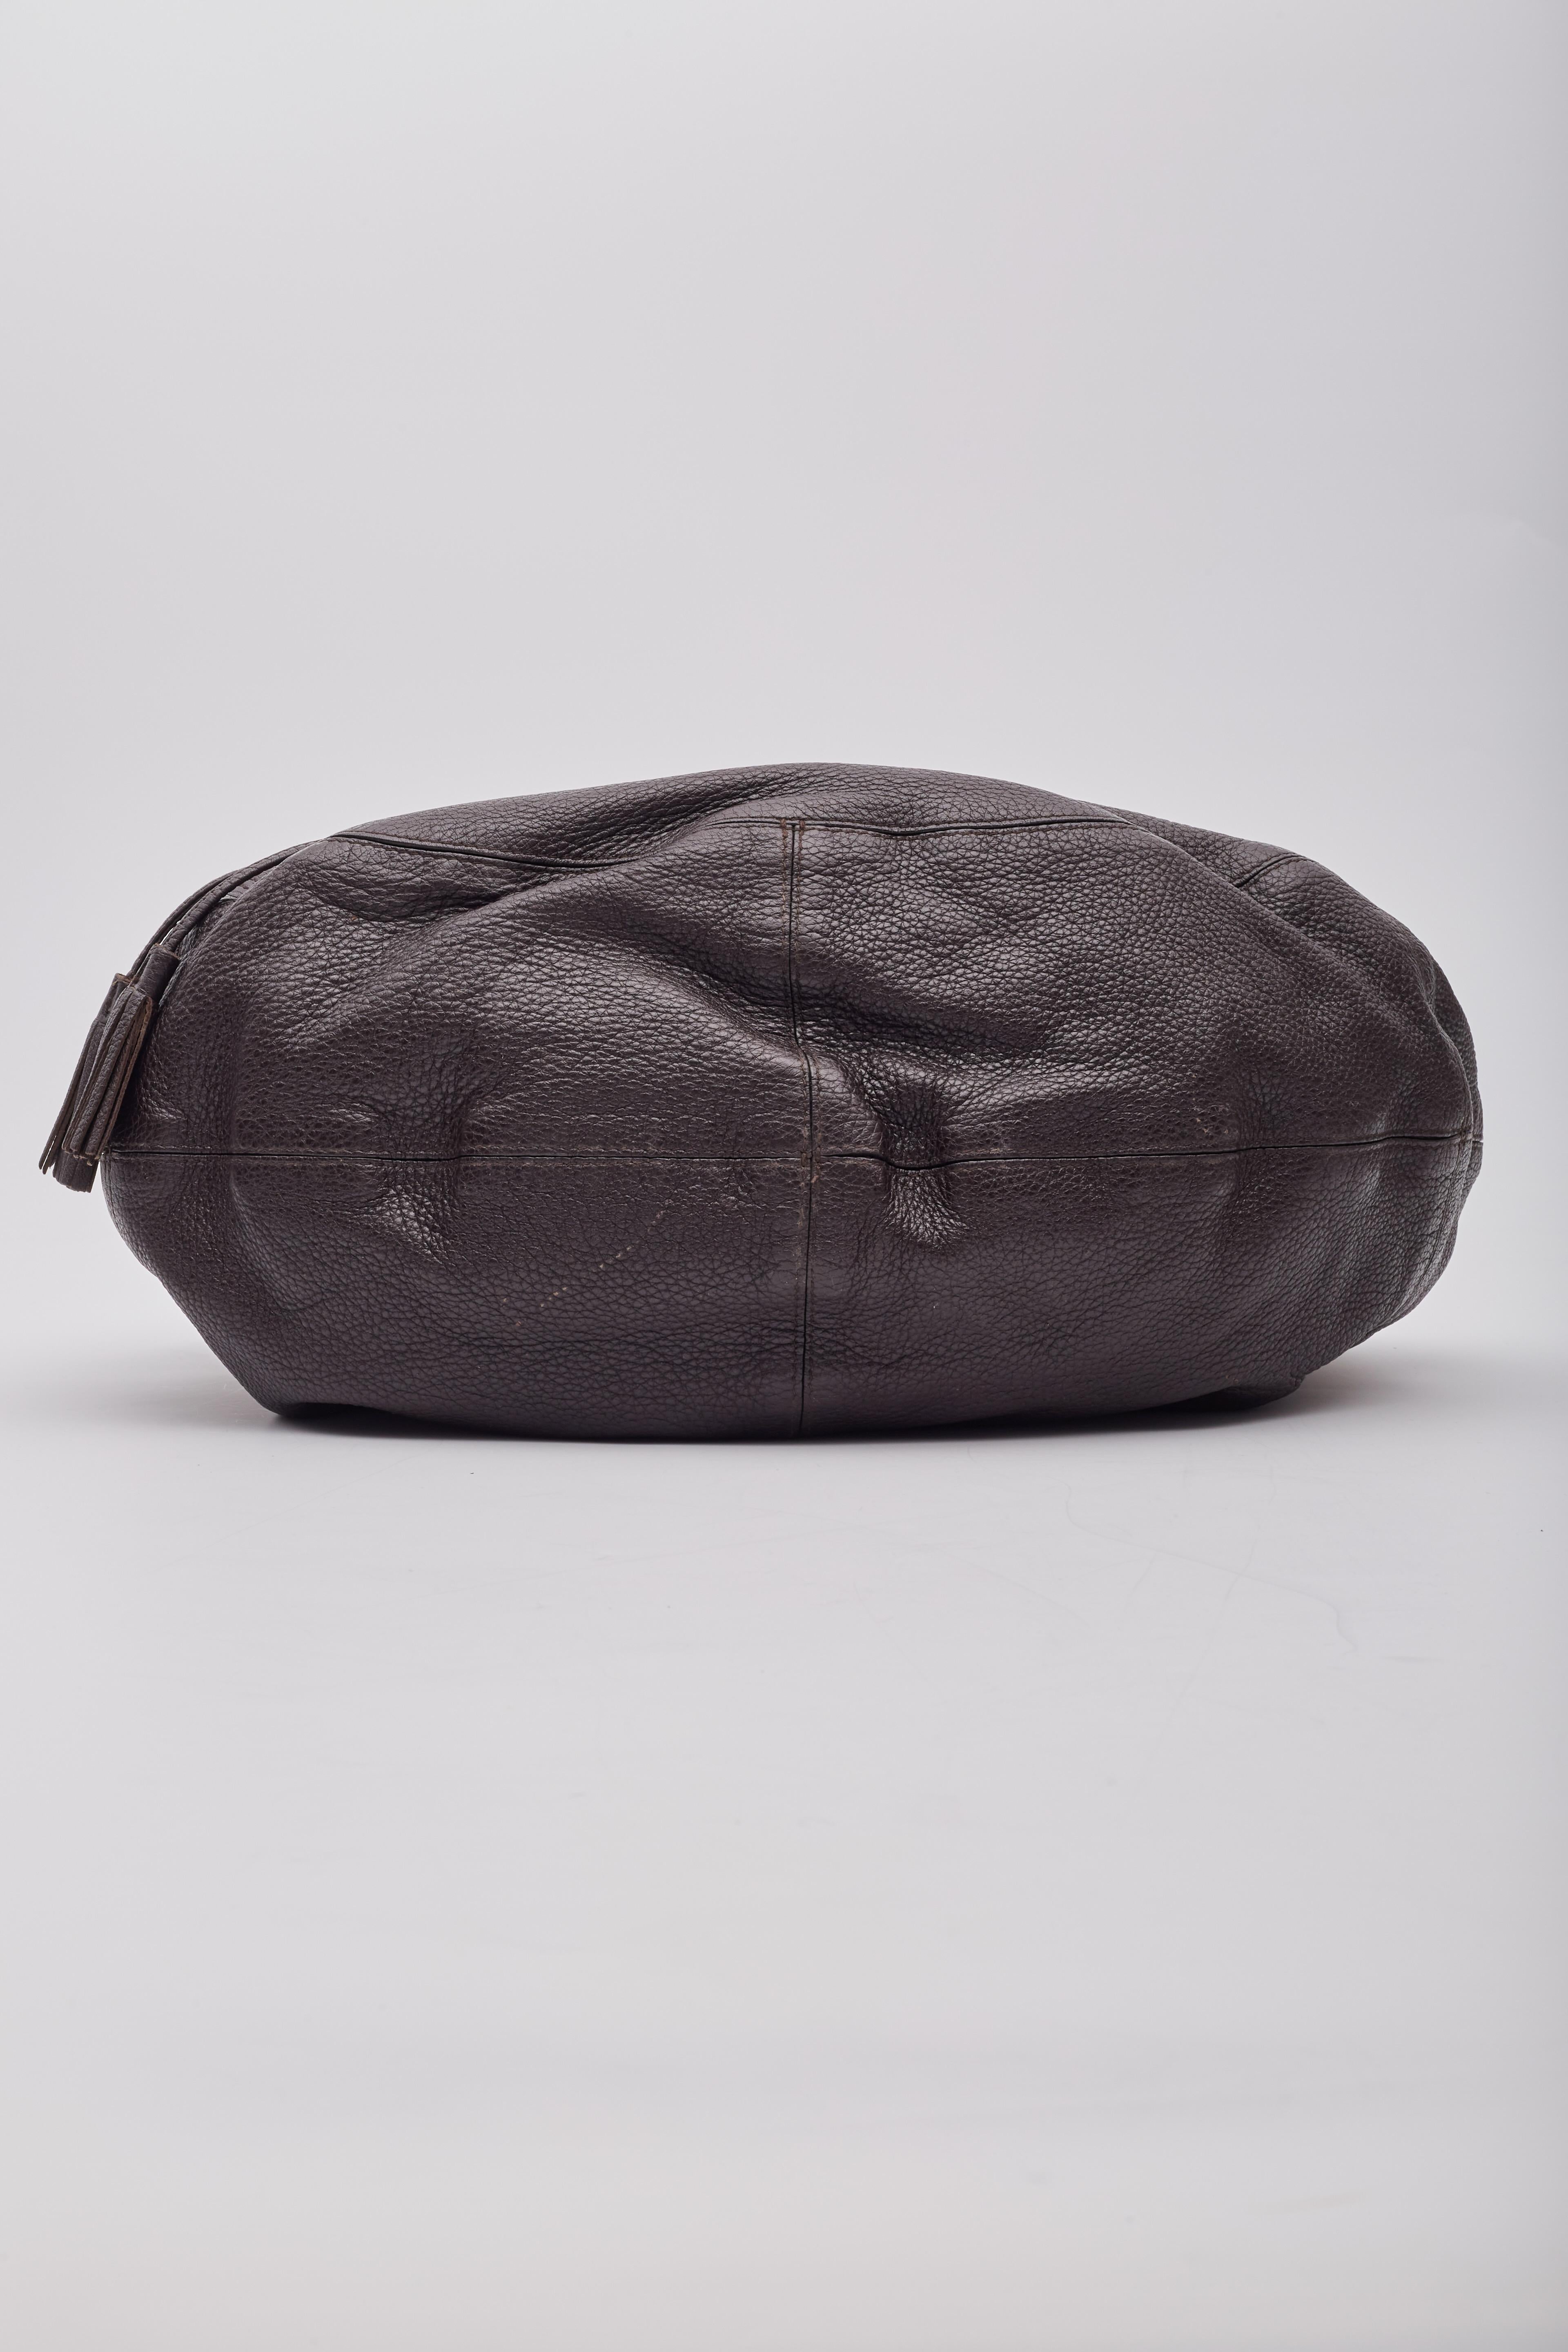 Bottega Veneta Intrecciato Copper Brown Leather Hobo Bag For Sale 2